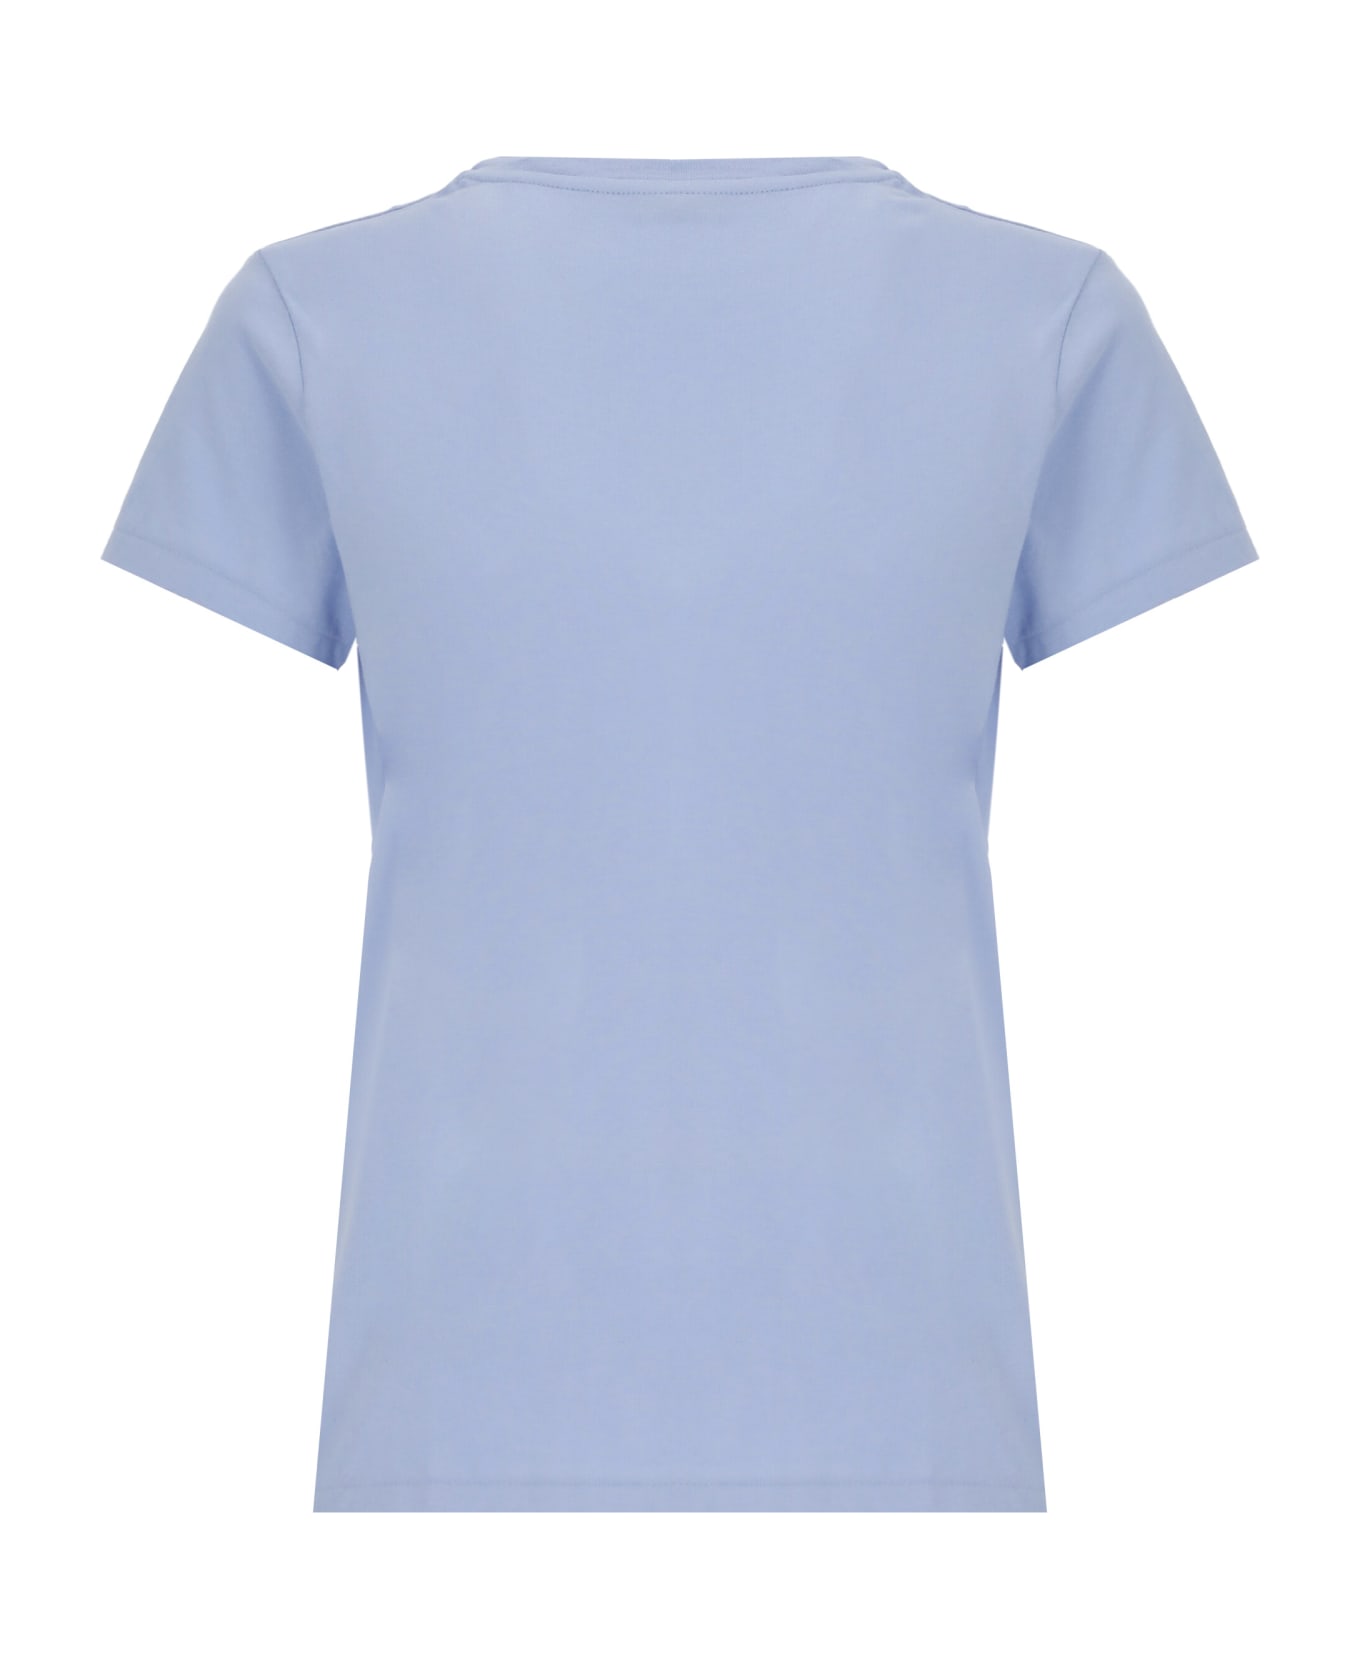 Ralph Lauren T-shirt With Pony - Dress Shirt Blue Tシャツ